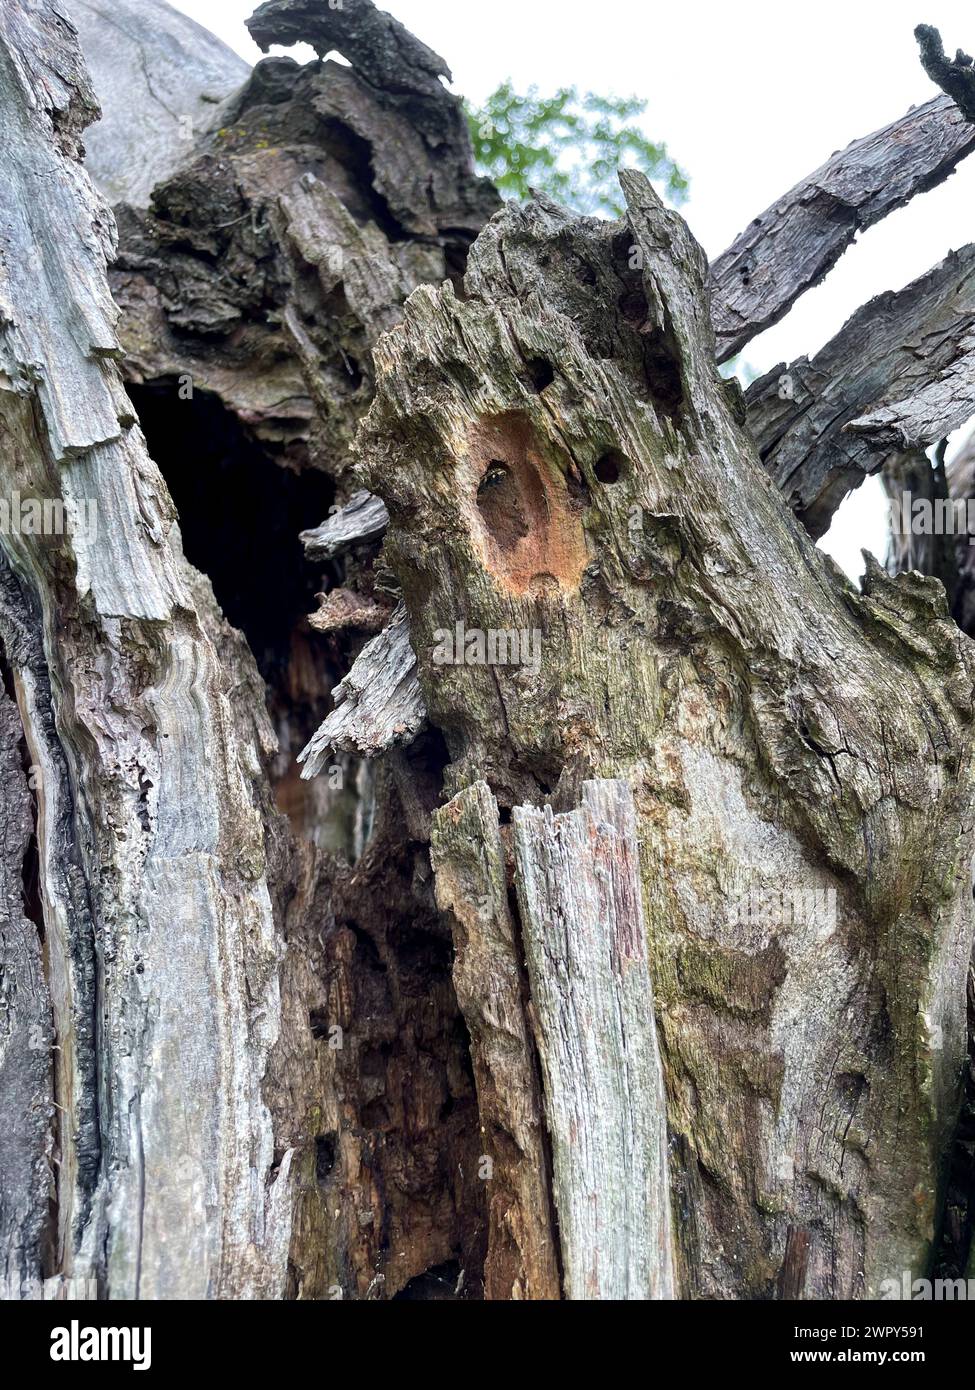 Höhle, Loch in einem alten knorrigen Baum, Zufluchtsort für Tiere Foto Stock